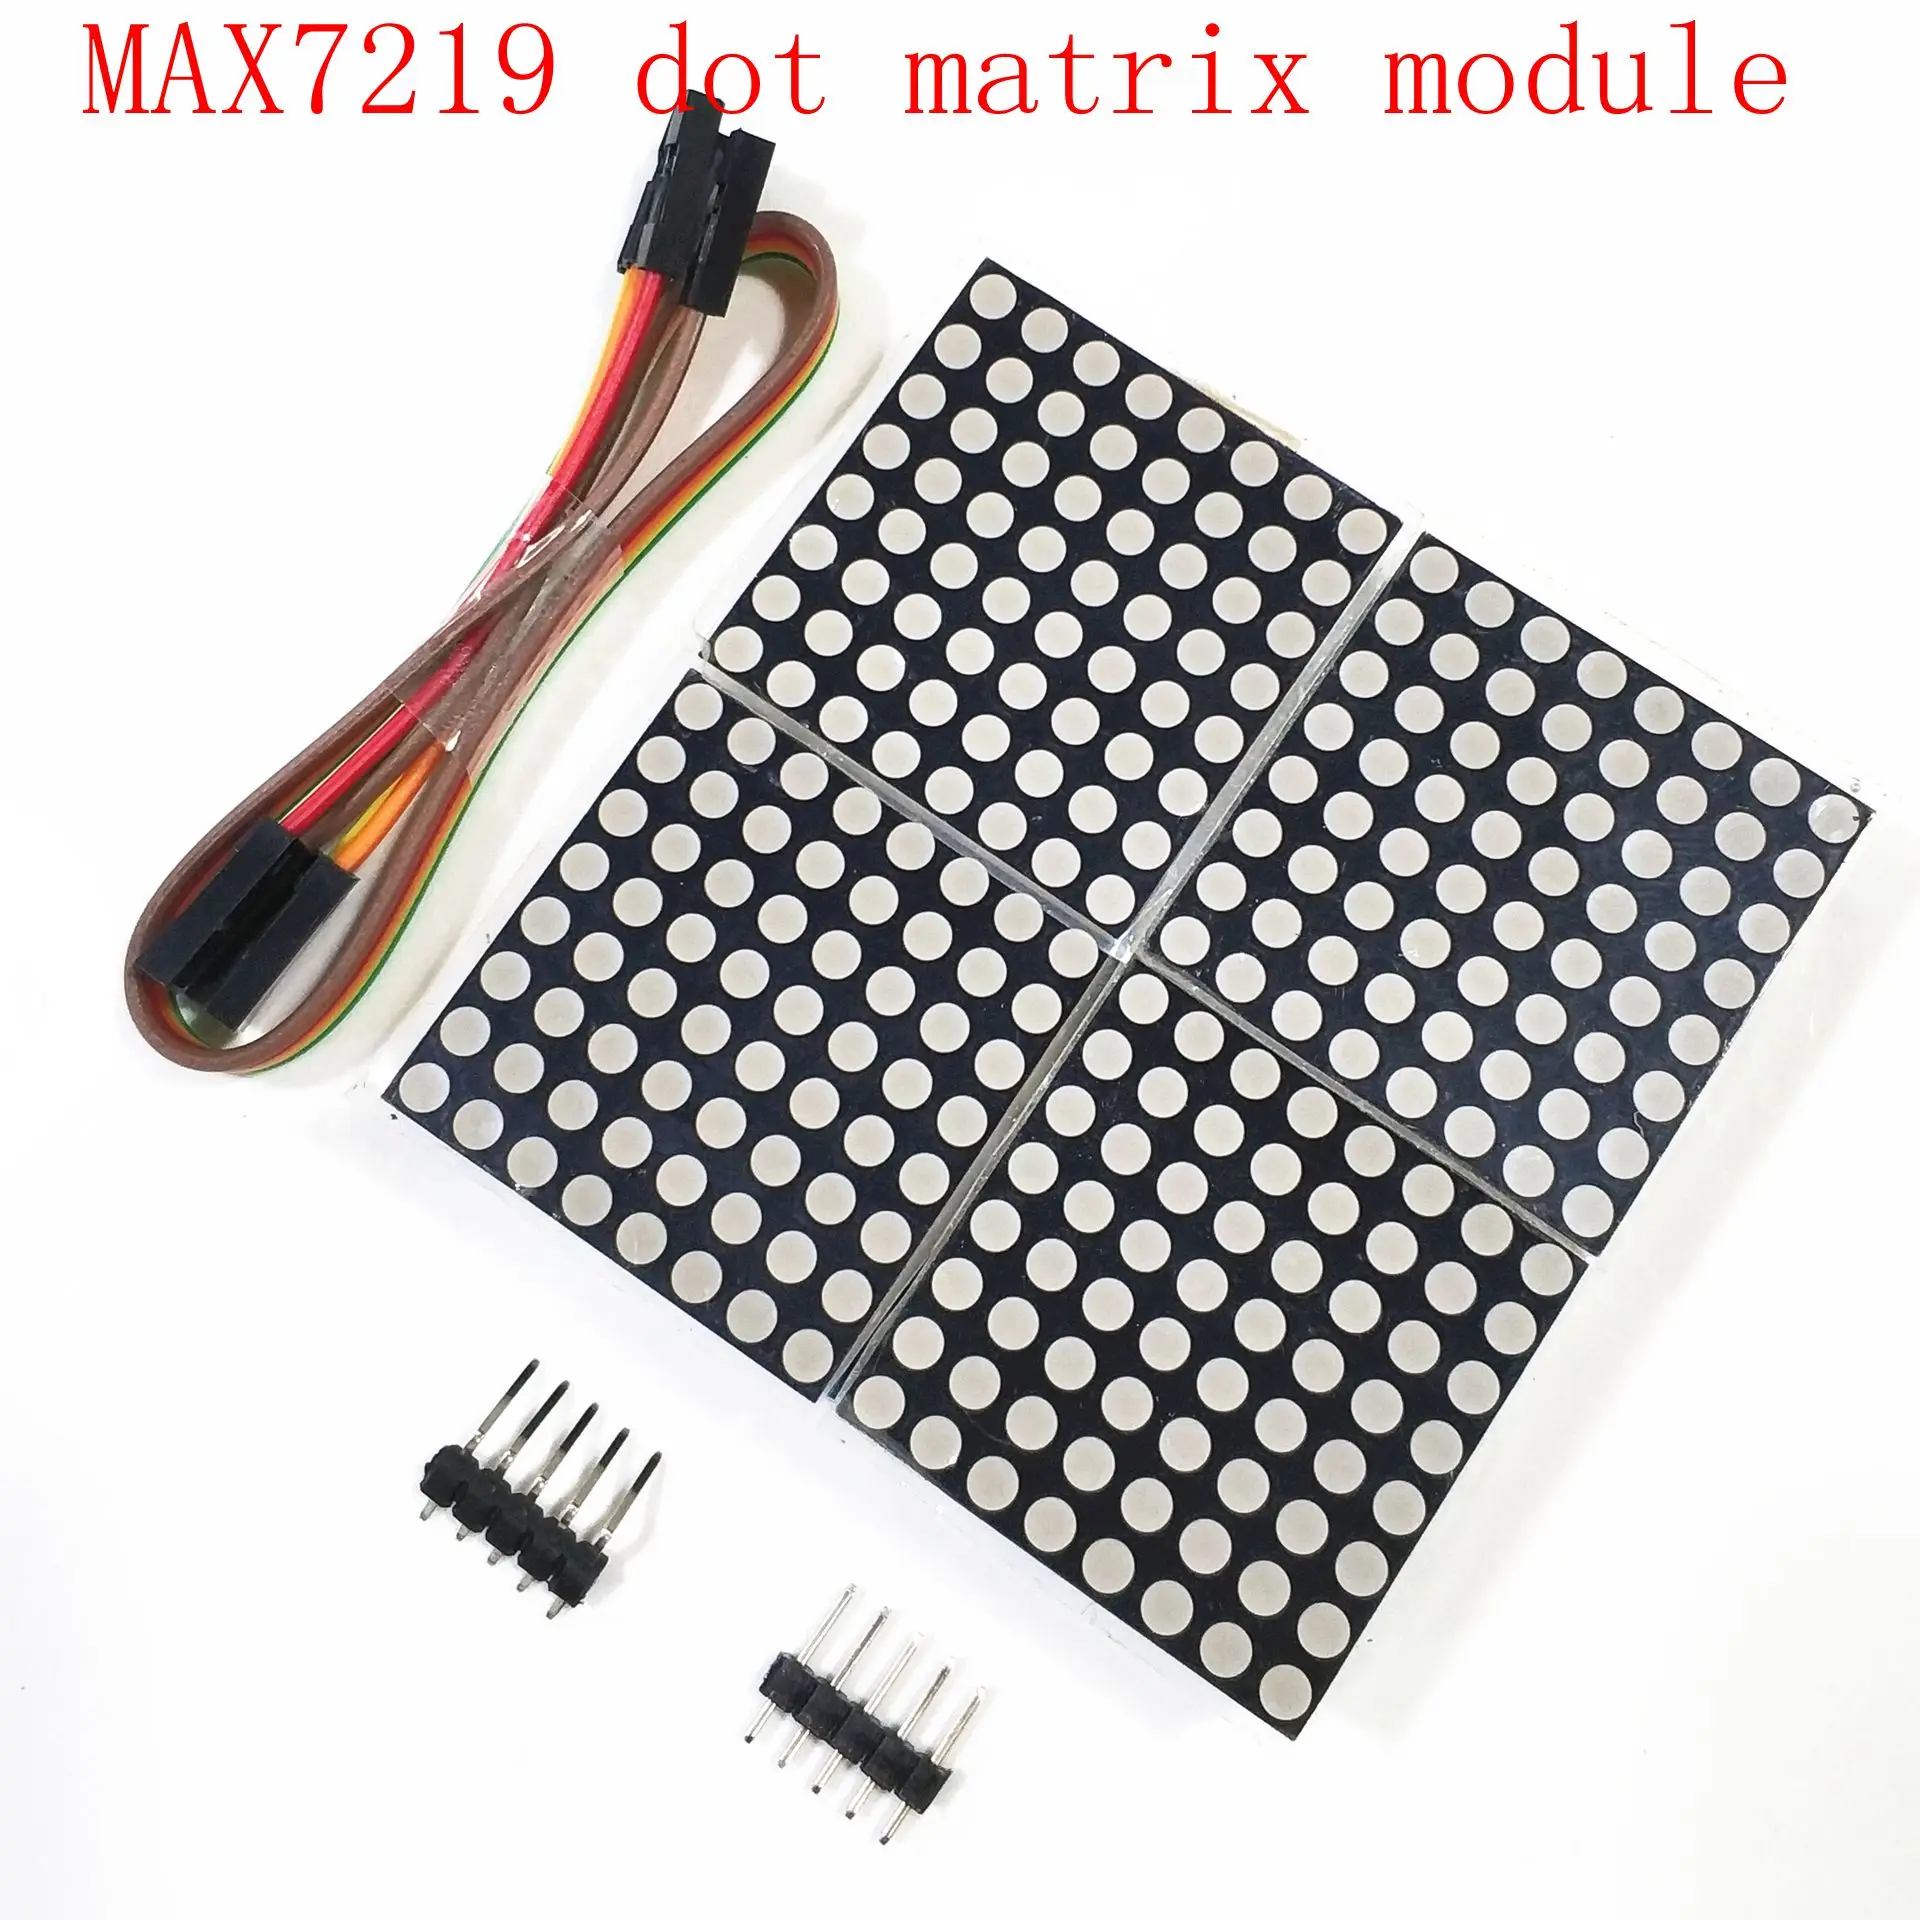 MAX7219 dot matrix module 4 dot matrix 2*2 display module Single chip control LED driver module